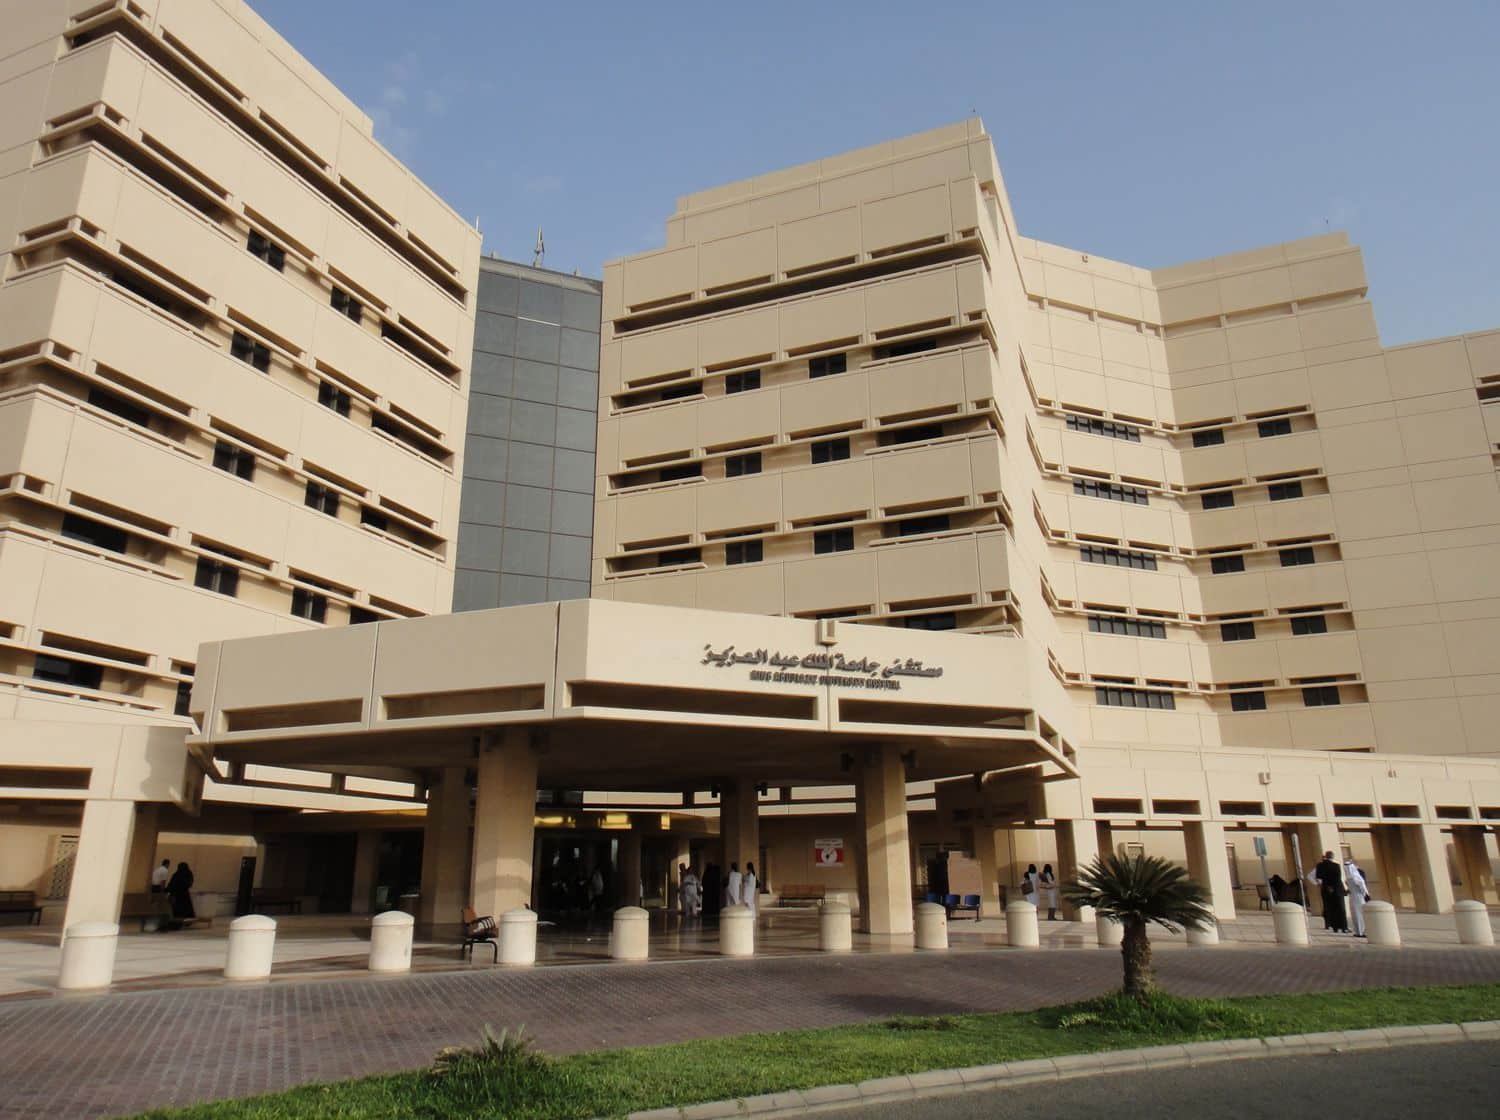 ما هي شروط القبول في جامعة الملك عبد العزيز للعام الراسي 2023 وأقل نسبة للقبول